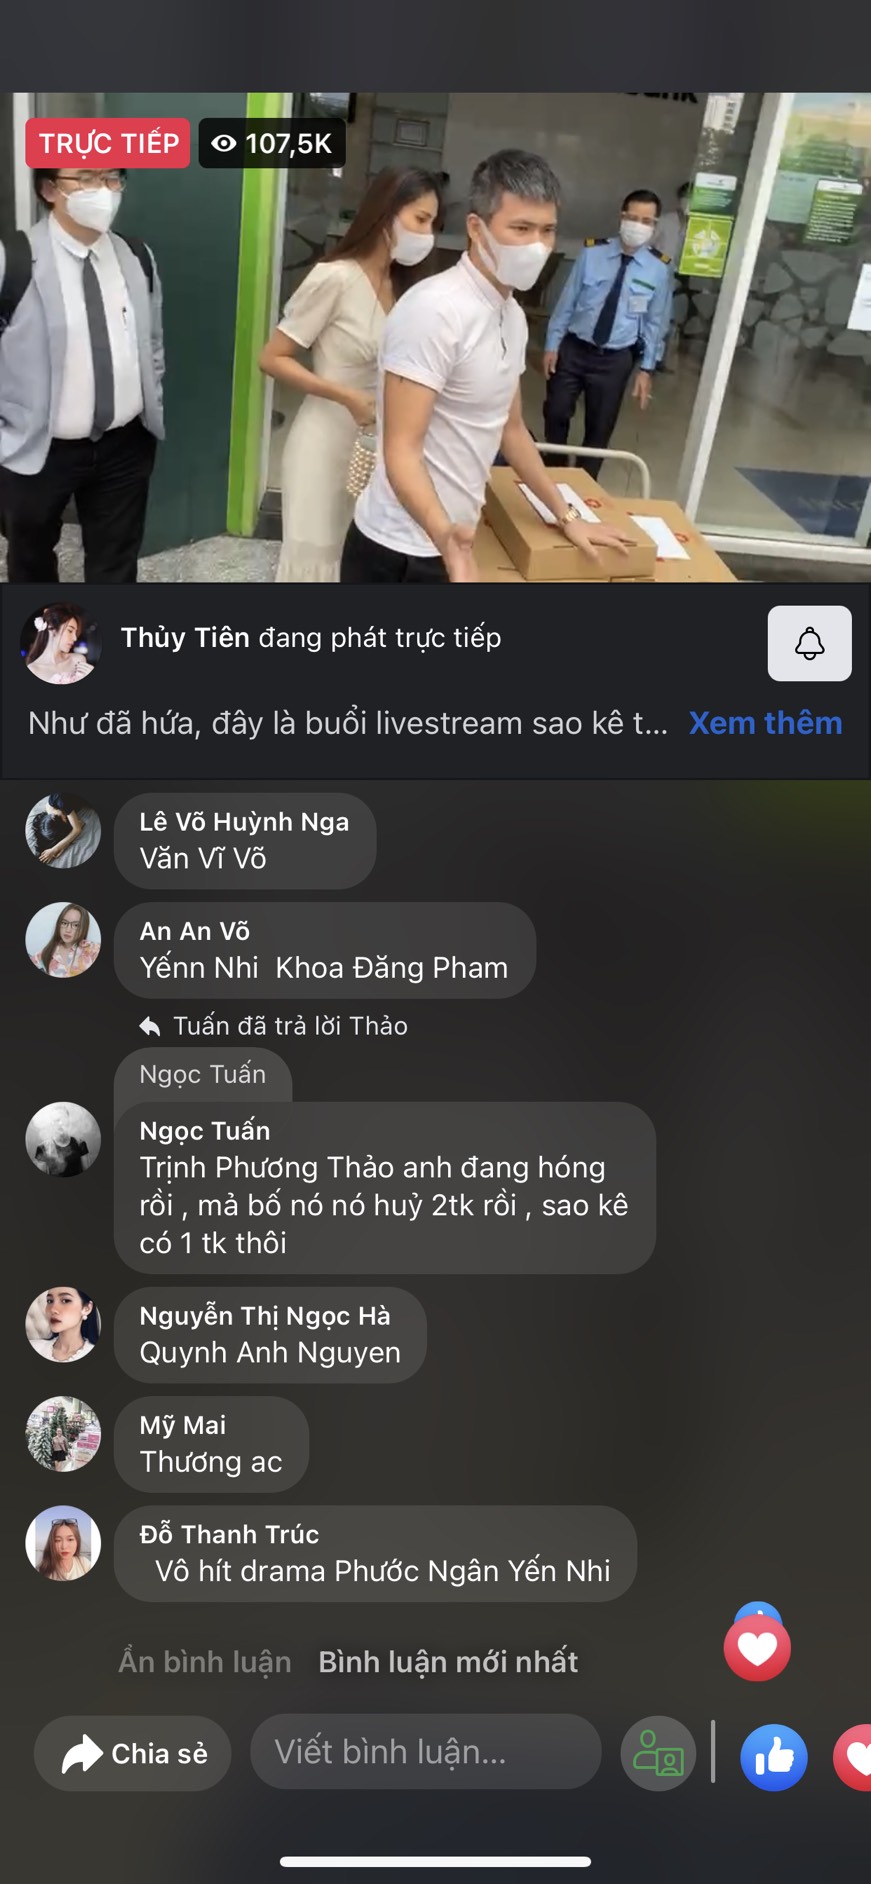 LIVE: Toàn cảnh Thủy Tiên livestream sao kê tại ngân hàng Vietcombank - Ảnh 3